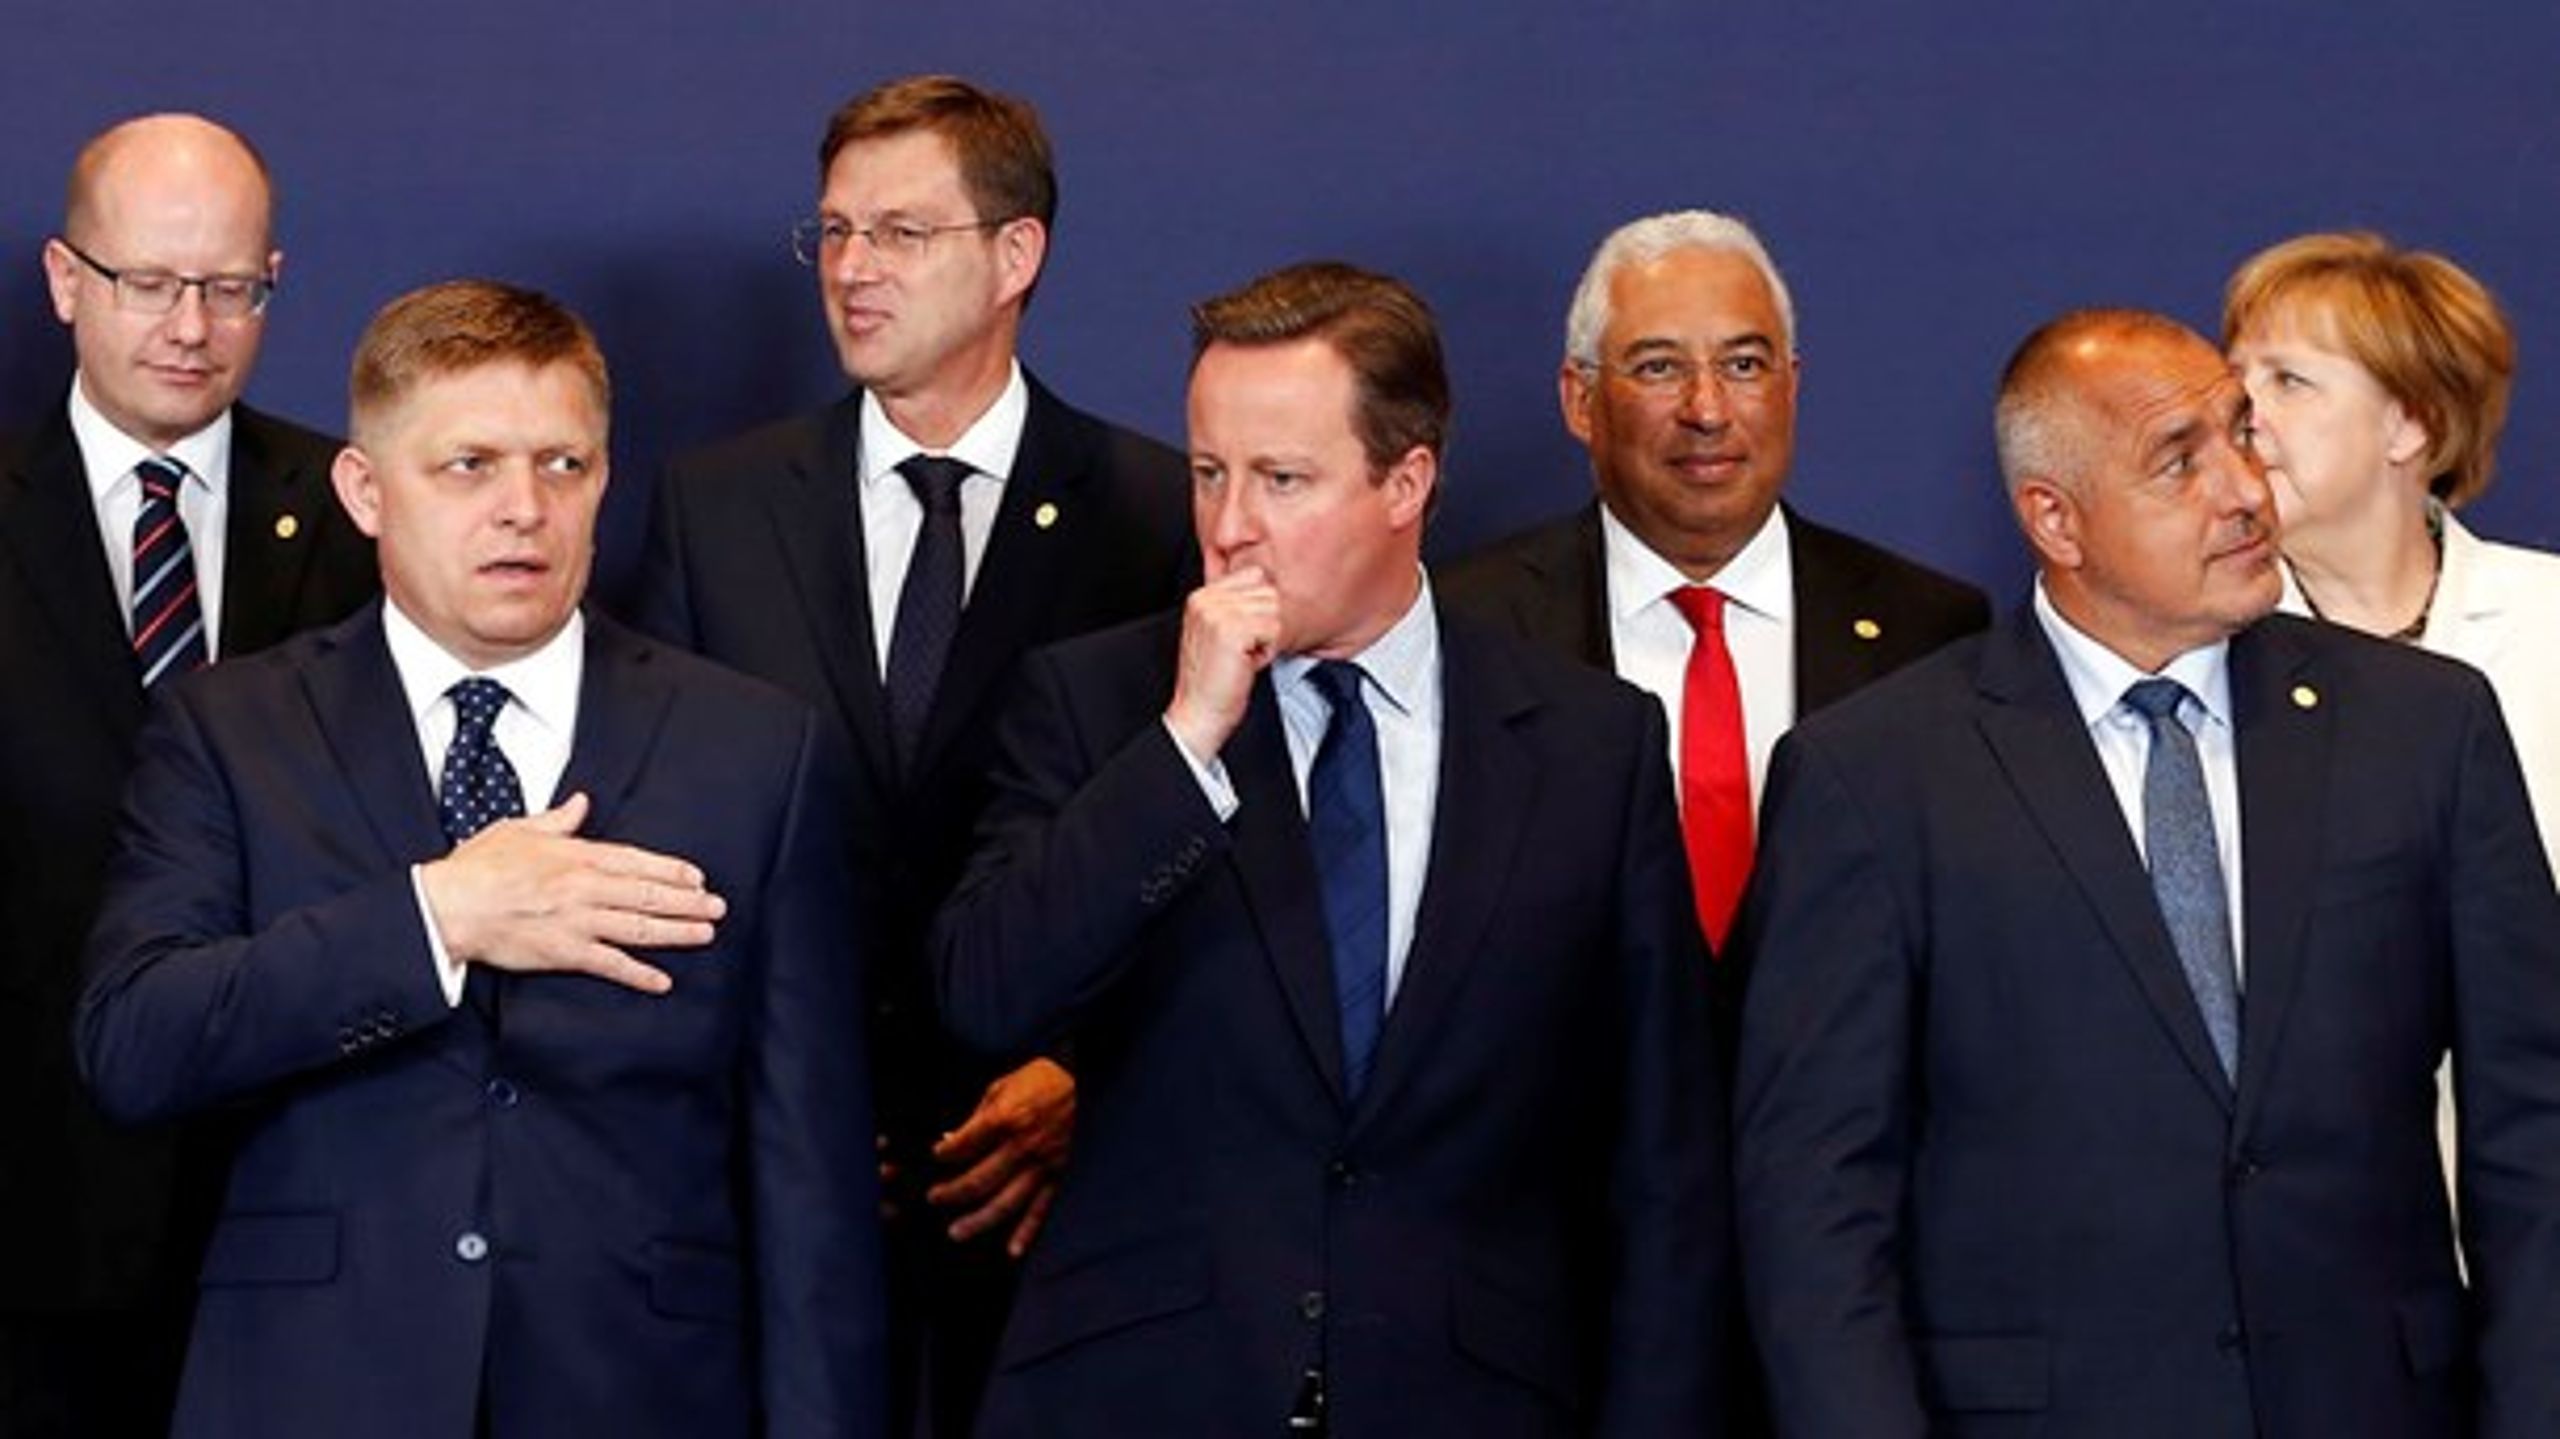 Det sidste såkaldte EU-familiefoto med David Cameron. Onsdag mødes de 27 EU-ledere for første gang uden briterne.